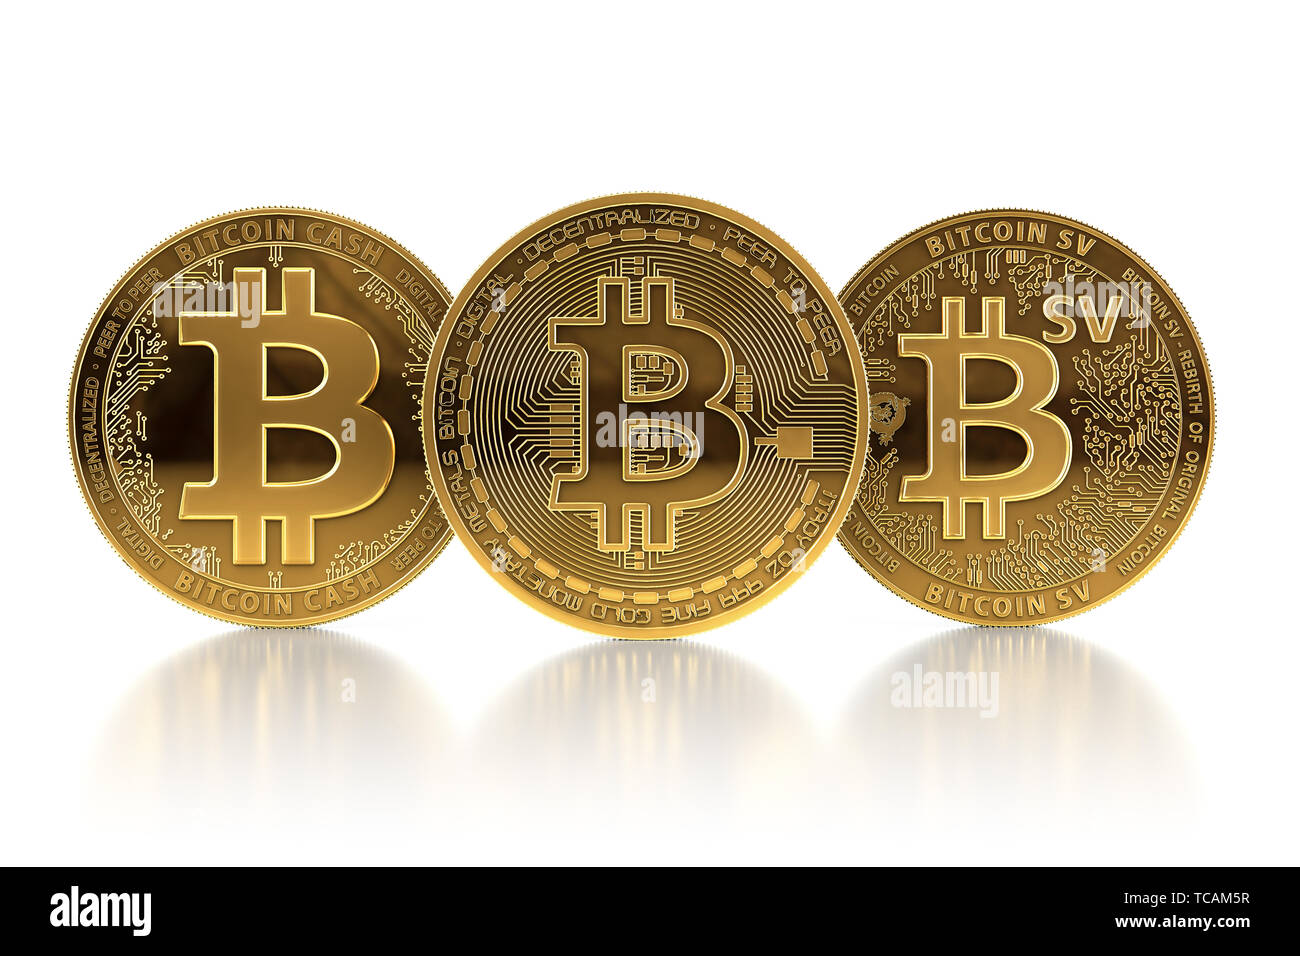 Drei verschiedene Bitcoin Münzen nach Gabeln. Bitcoin (BTC) nach bitcoin Cash (BCH) und Bitcoin Satoshi Vision (BSV) Konzept. 3D-Darstellung Stockfoto